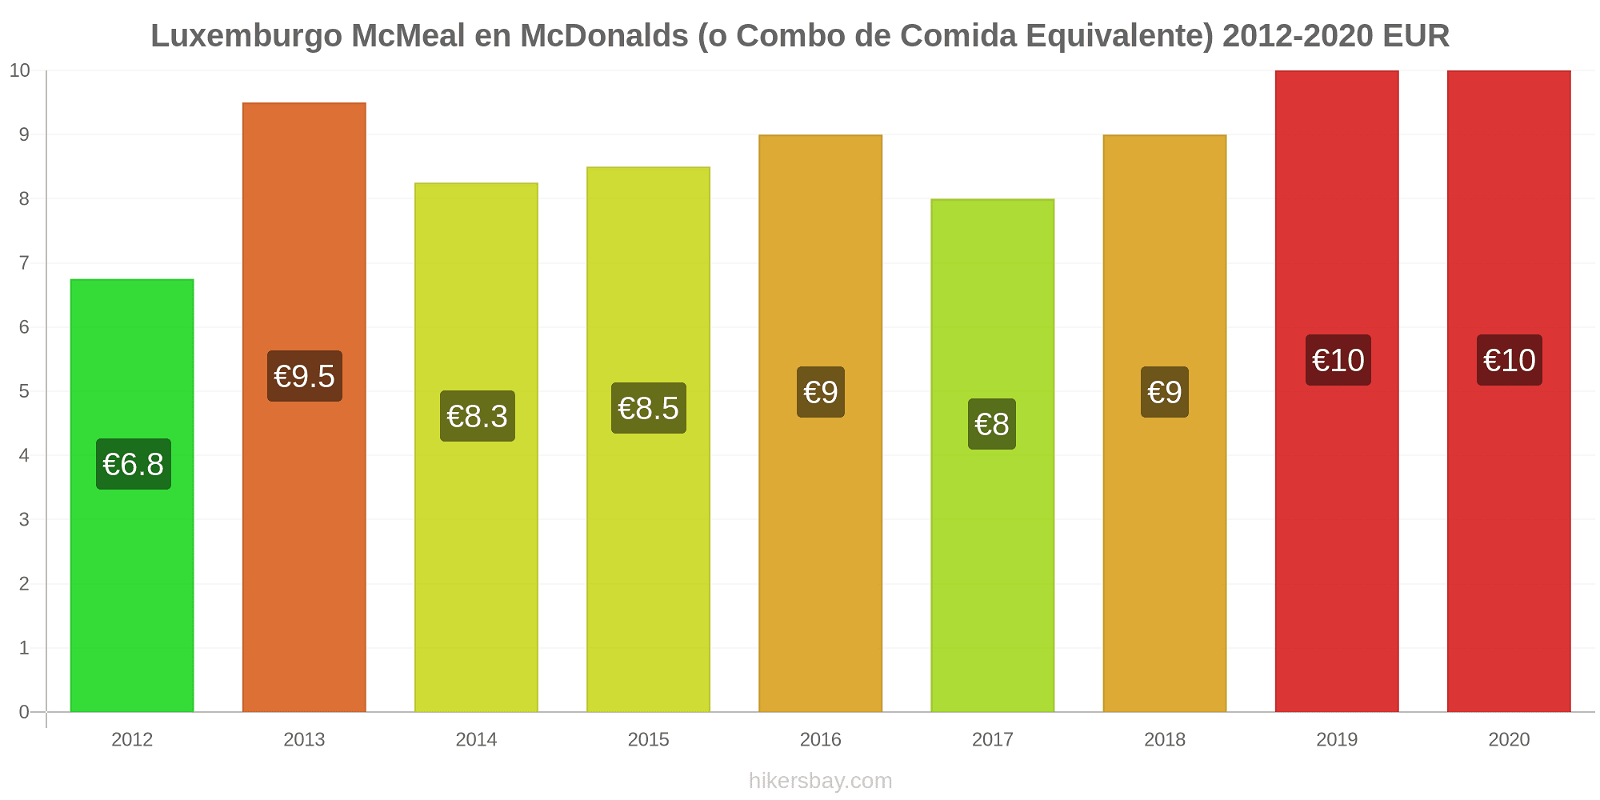 Luxemburgo cambios de precios McMeal en McDonalds (o menú equivalente) hikersbay.com